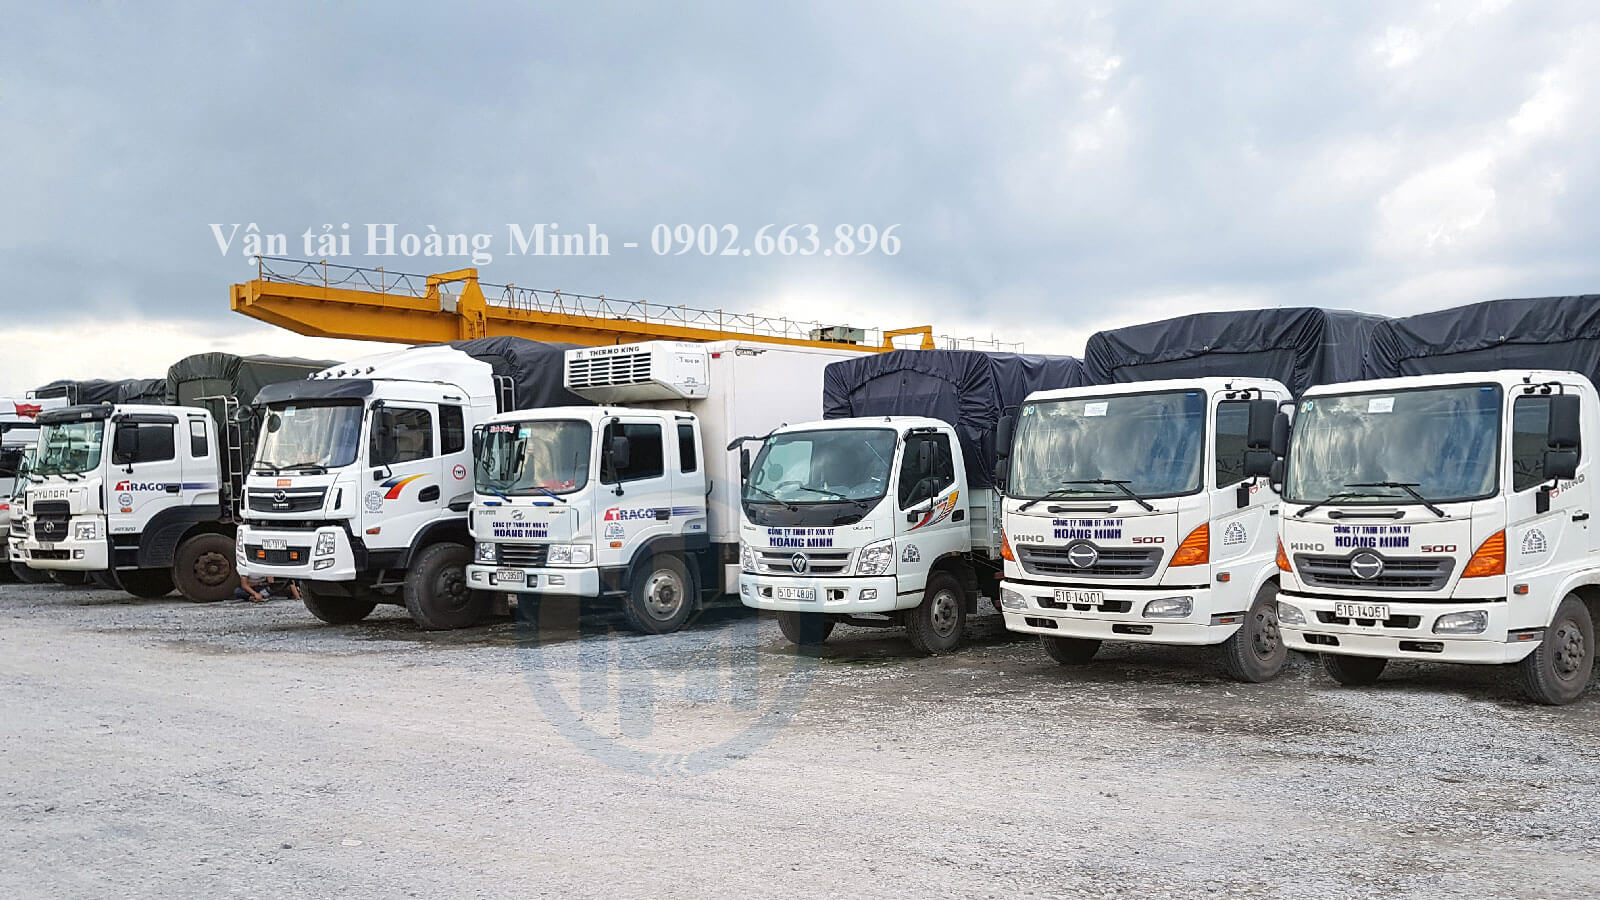 Vận tải Hoàng Minh cho thuê xe tải chở hàng Biên Hòa các loại